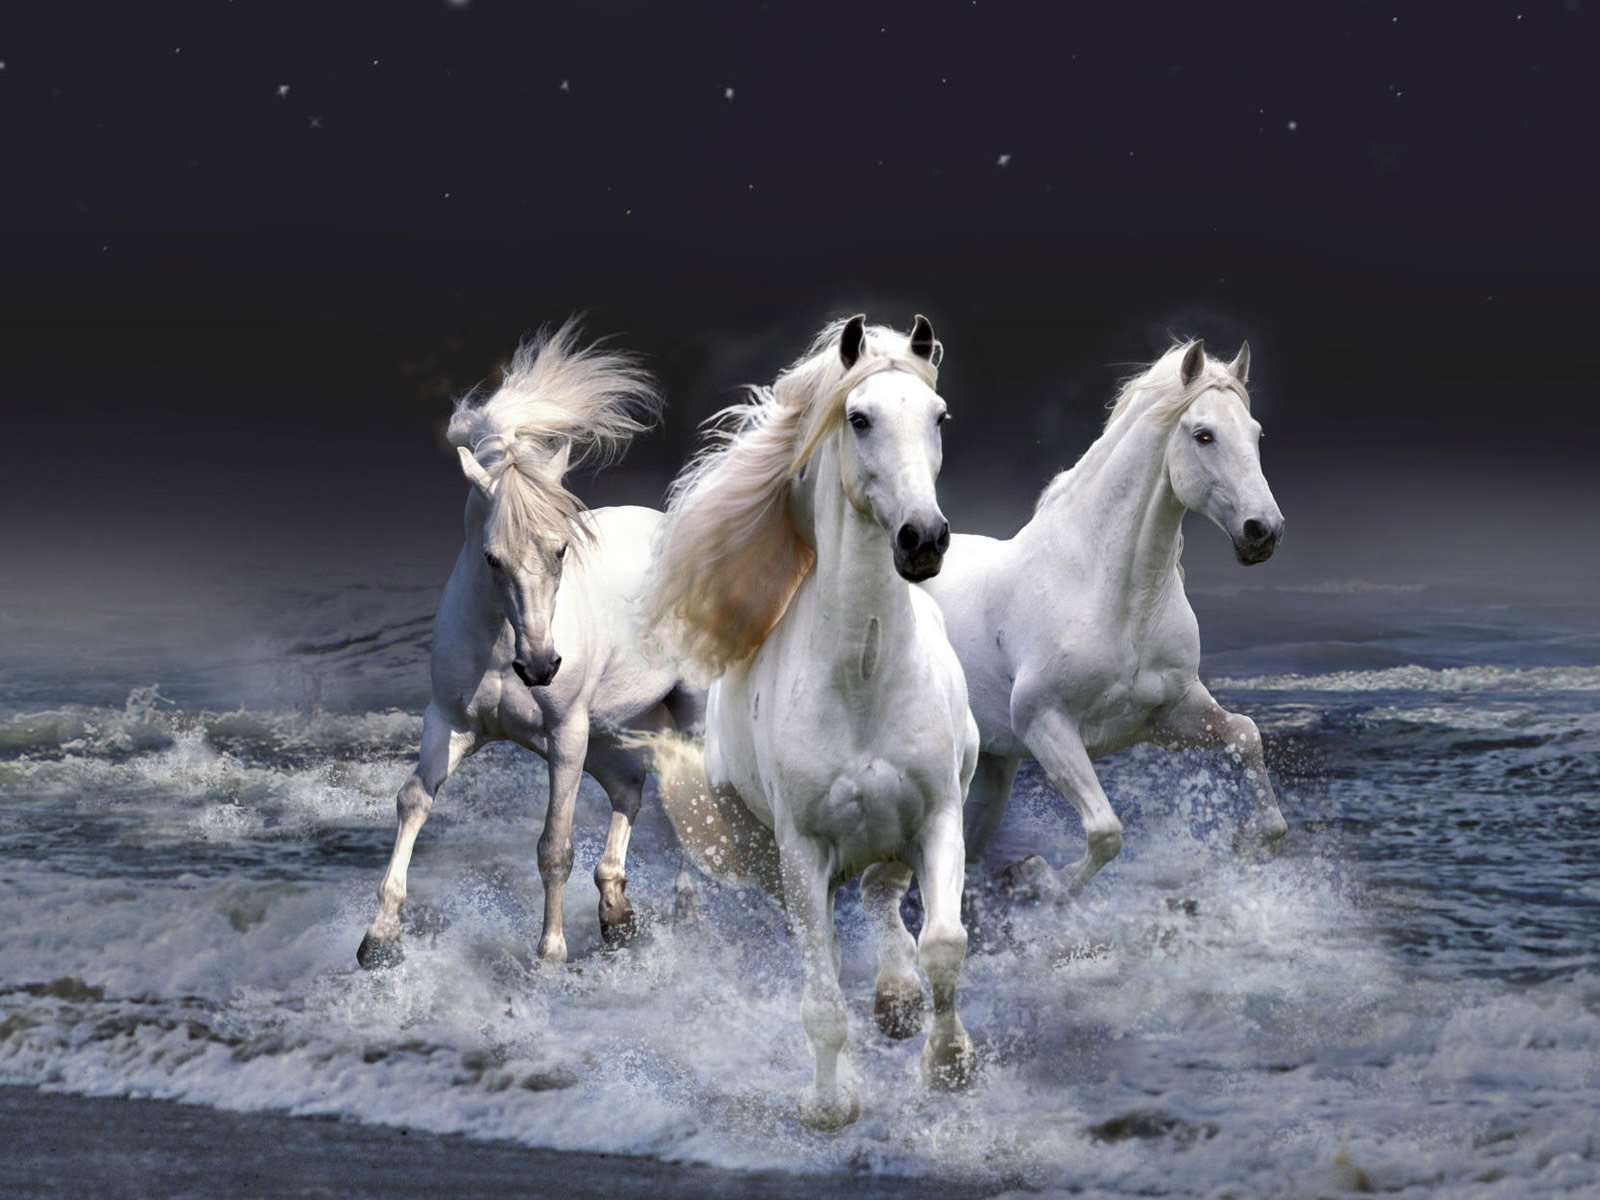 White Horse Wallpaper HD 4k by SahibDM on DeviantArt